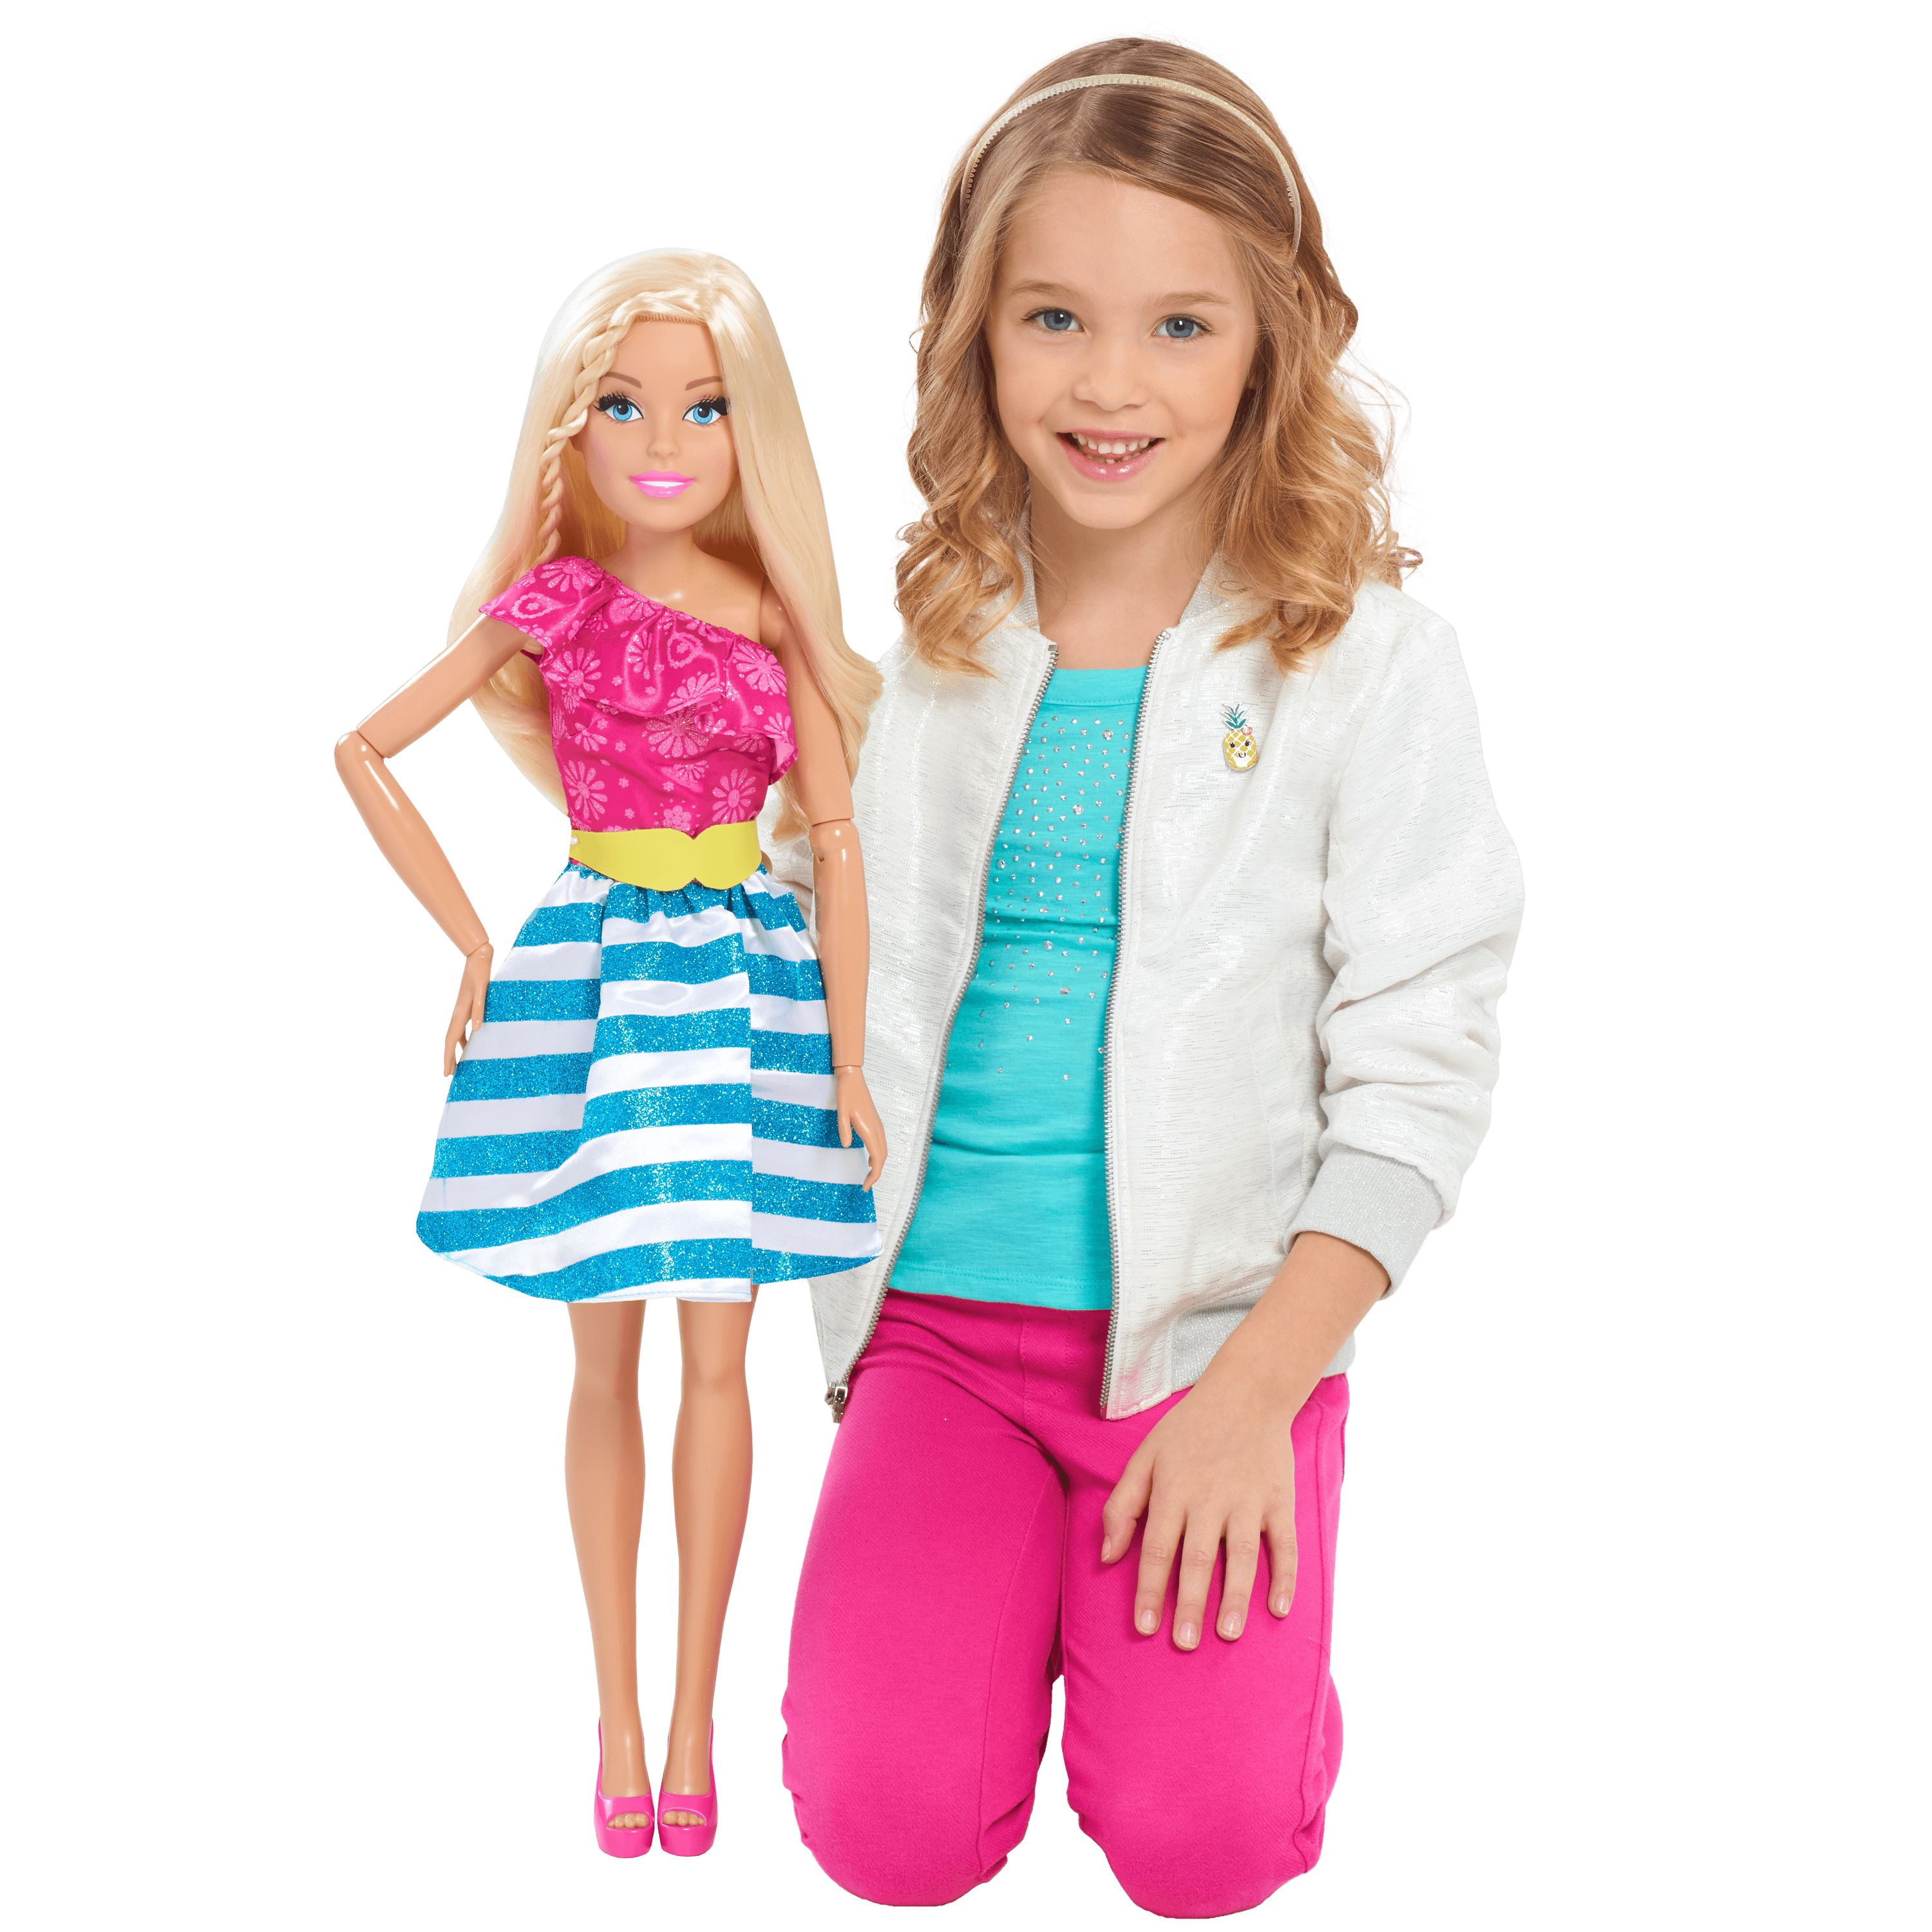 24 inch barbie doll